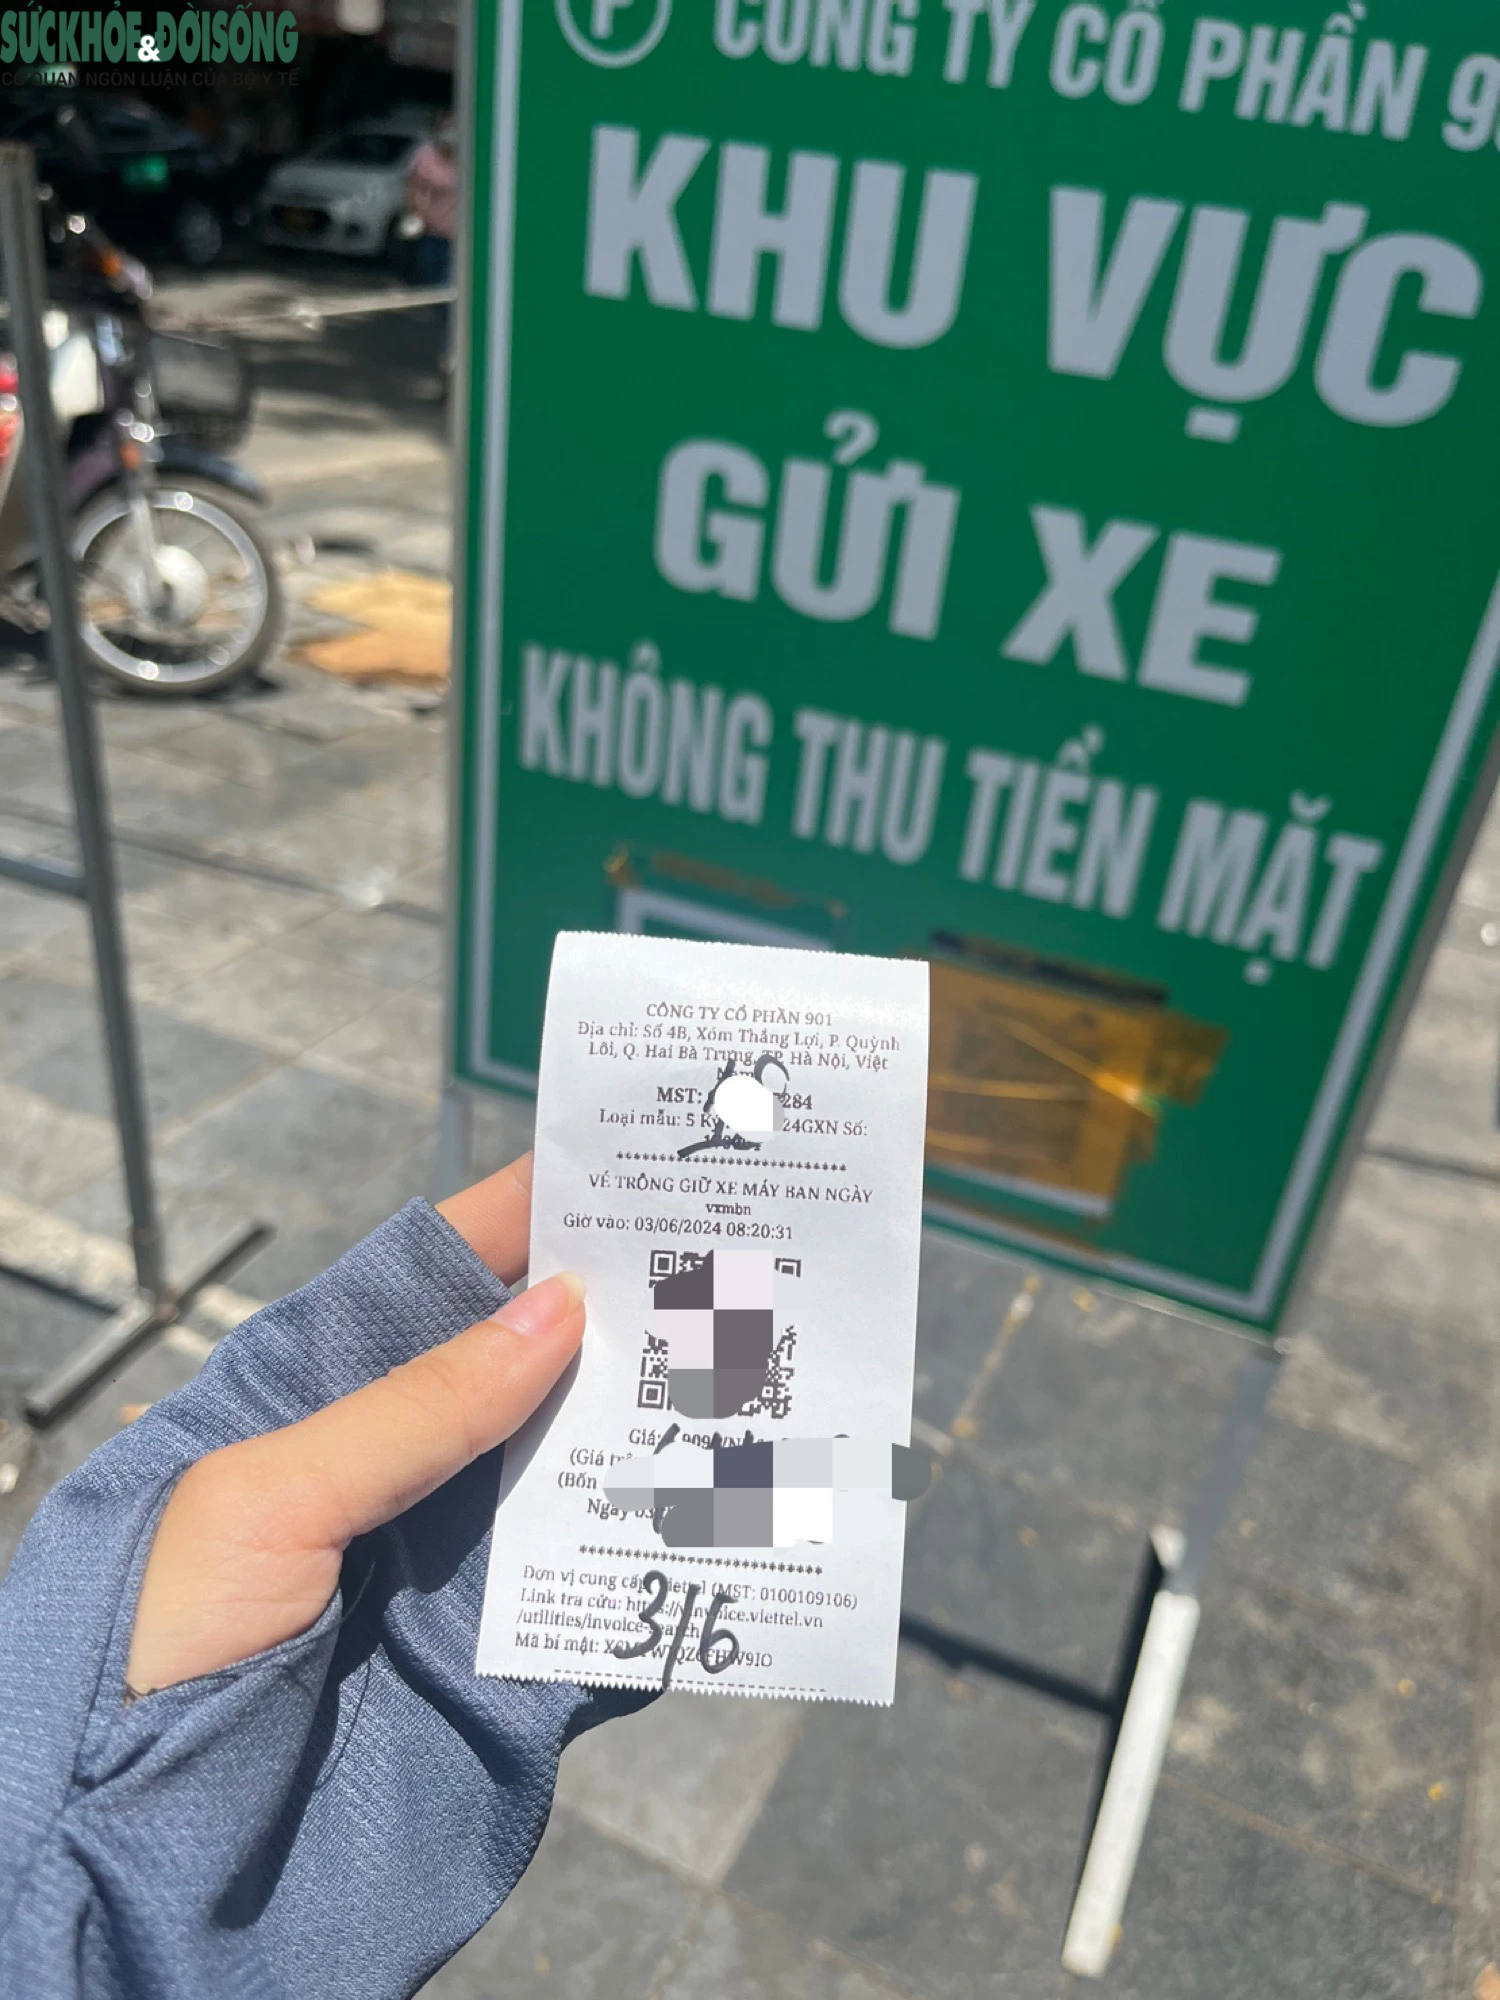 Dịch vụ trông xe không dùng tiền mặt tại Hà Nội: Tránh 'chặt chém'- Ảnh 2.